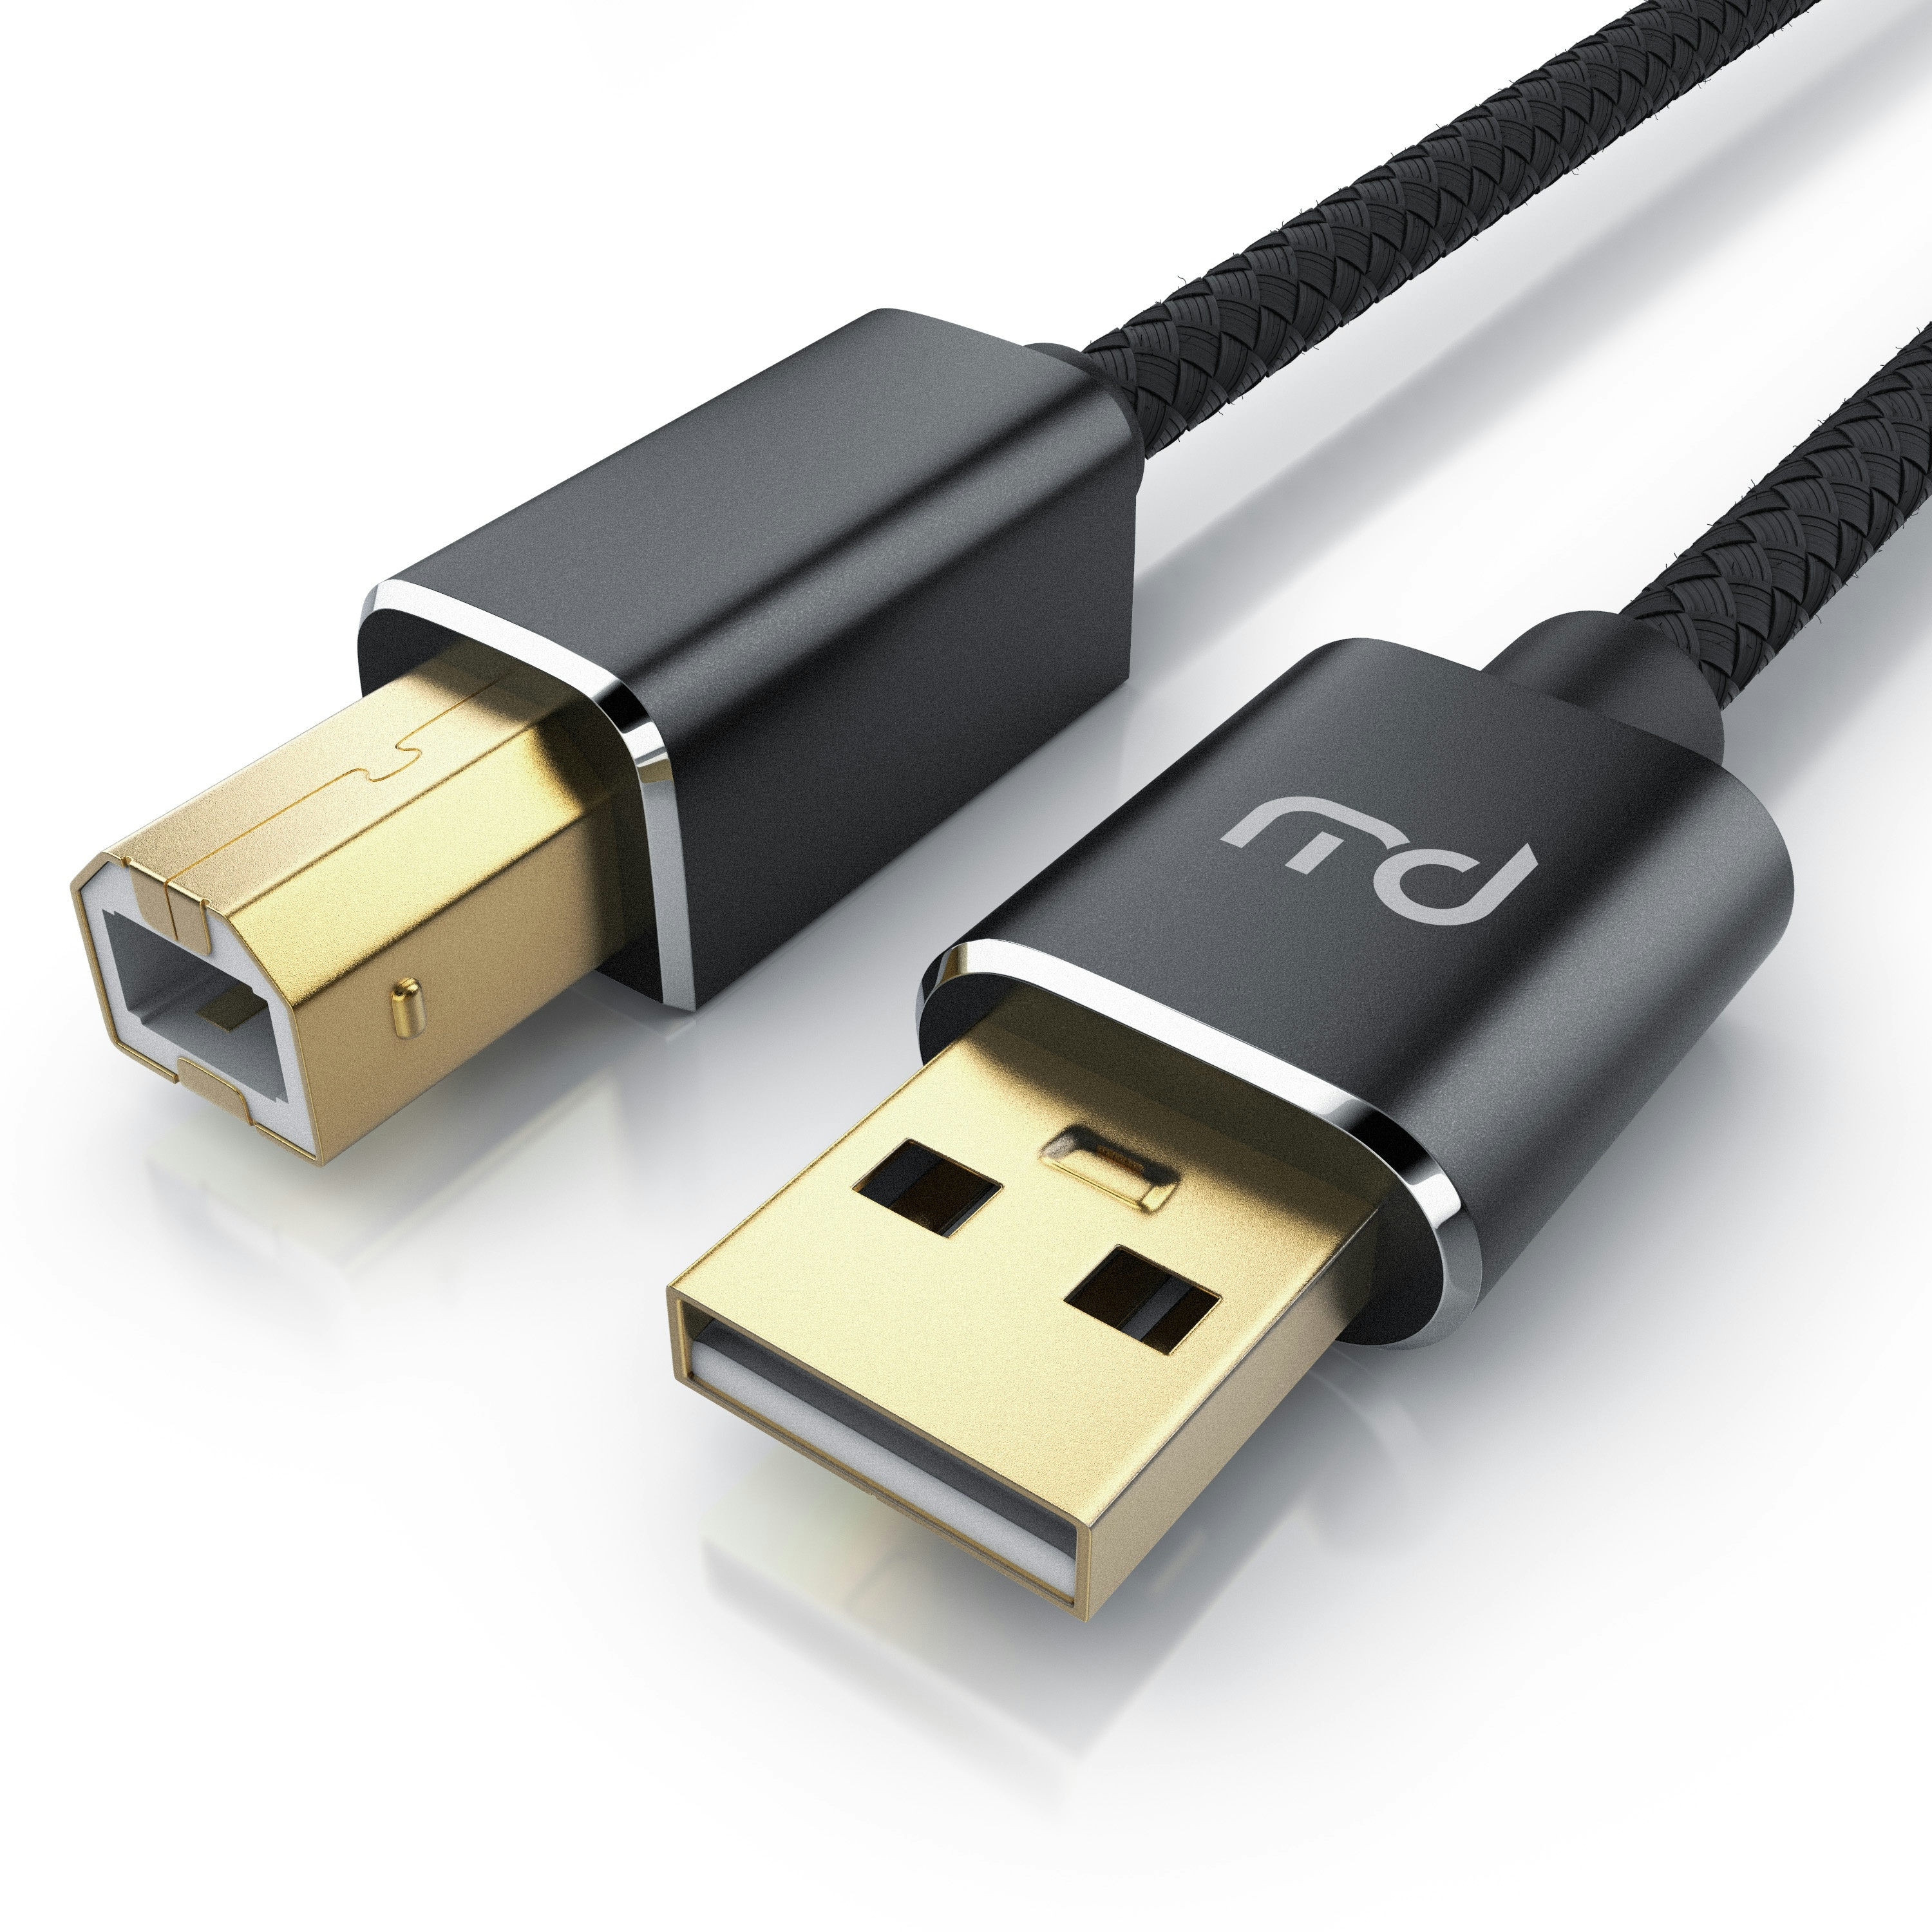 Primewire USB 2.0 Drucker / Scanner Kabel mit Nylonmantel - 5m